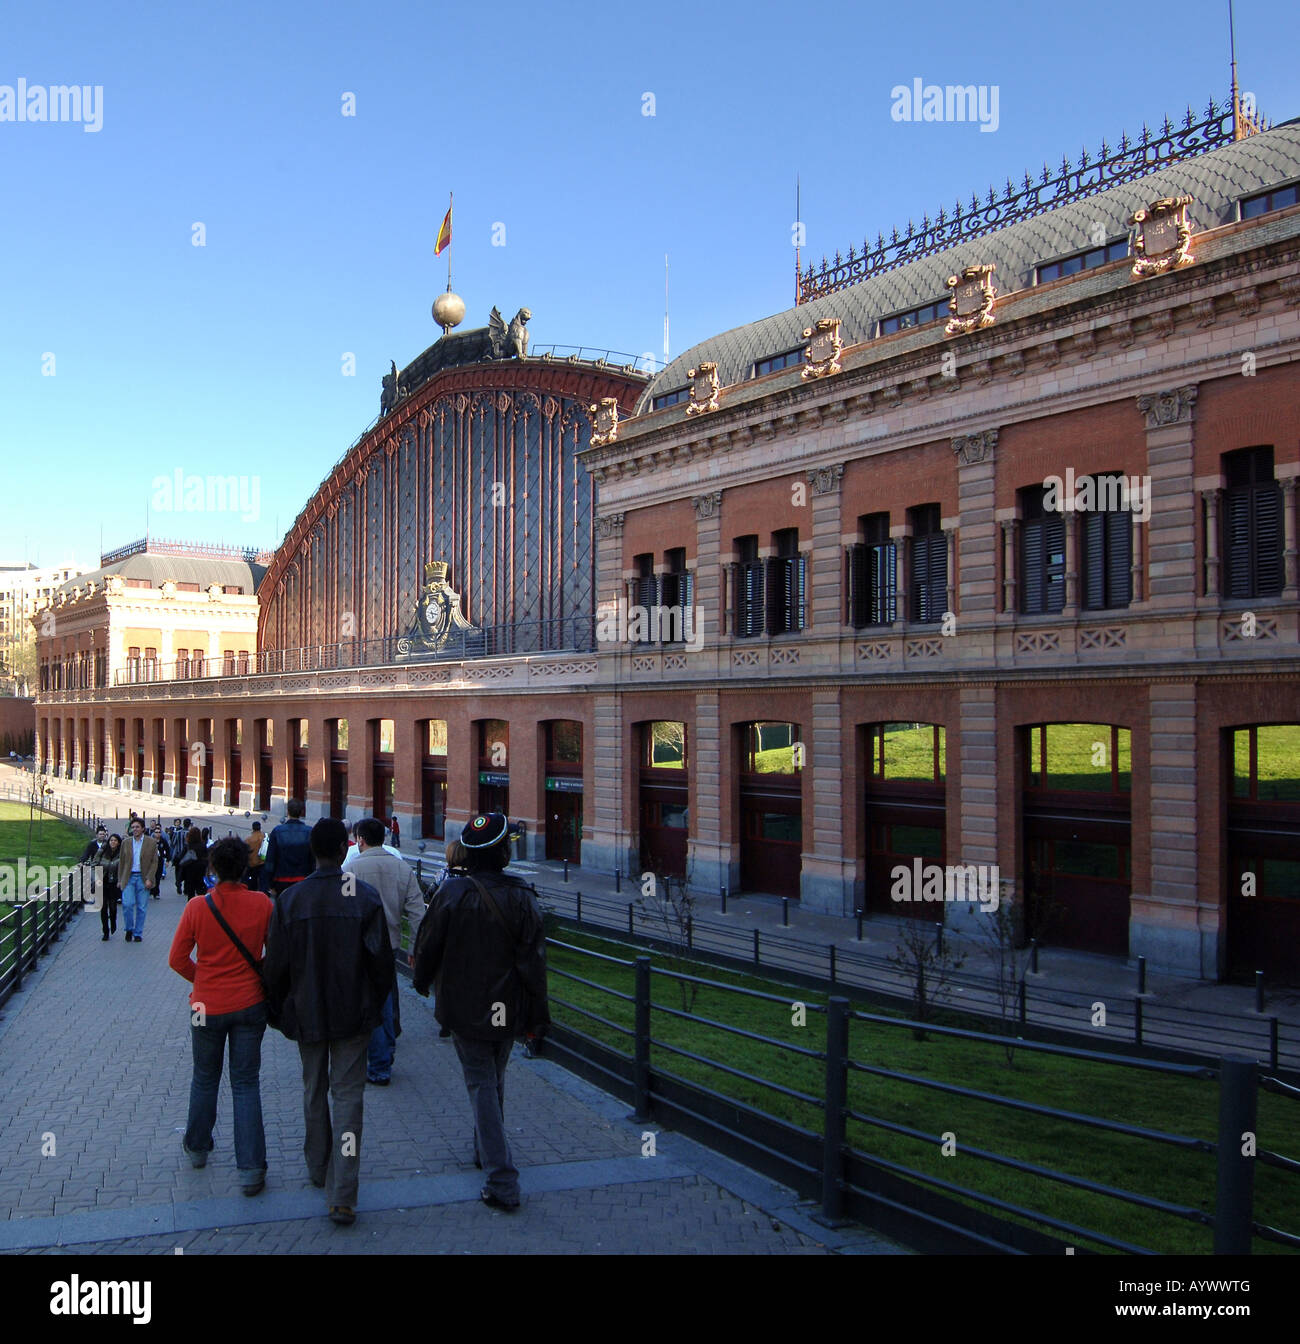 Spagna Madrid Atocha Renfe stazione ferroviaria Foto Stock